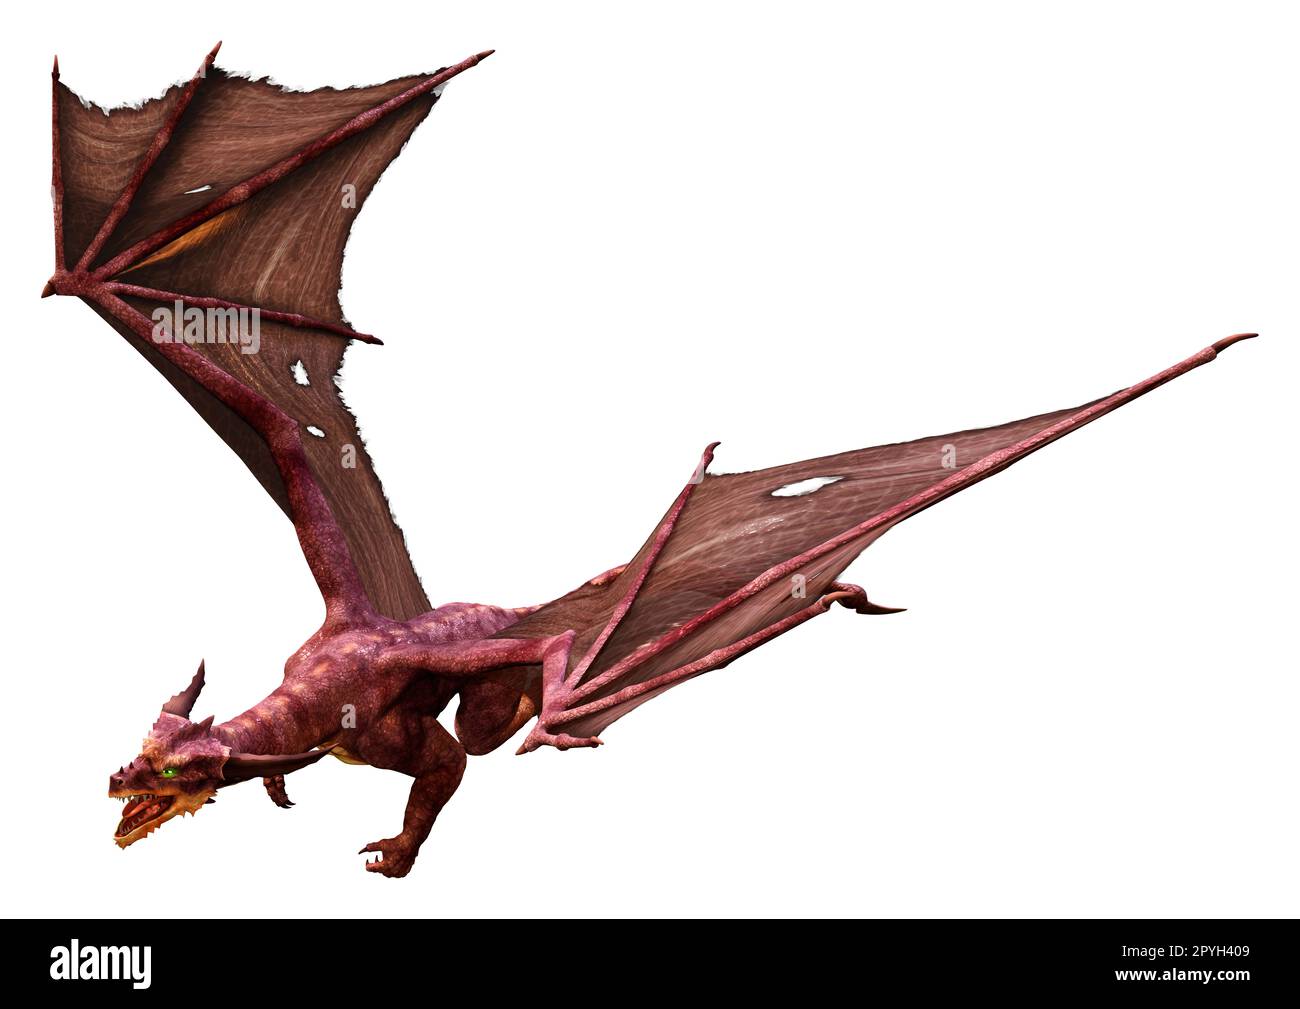 3D-Rendering eines Fantasy-Drachen isoliert auf weißem Hintergrund Stockfoto